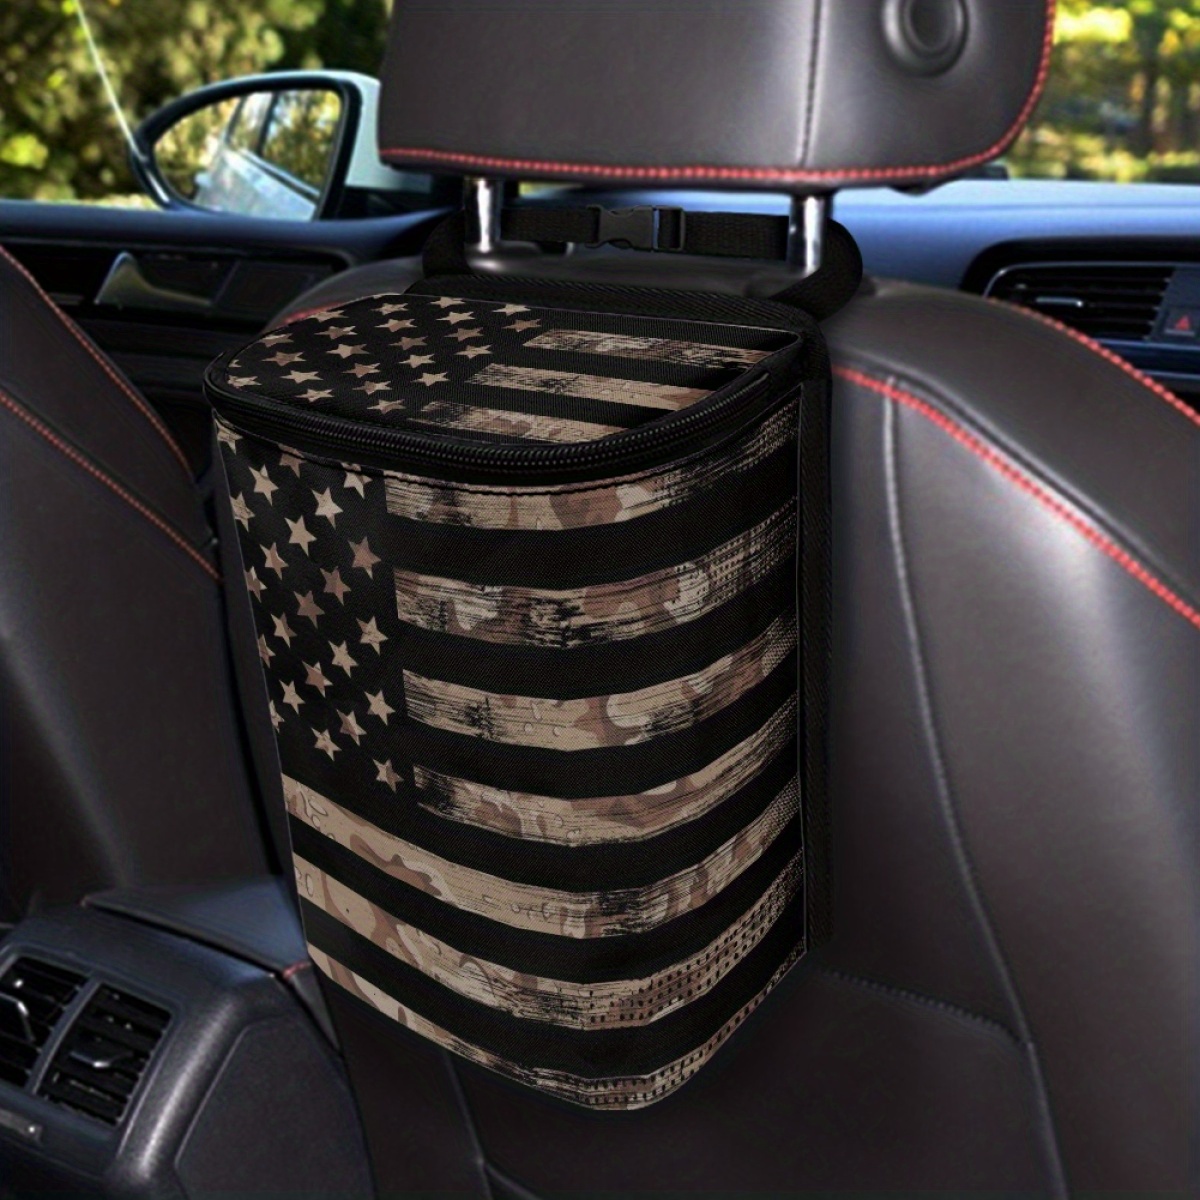 Vintage American Flag Pattern Car Trash Can - Trash Bag For Car